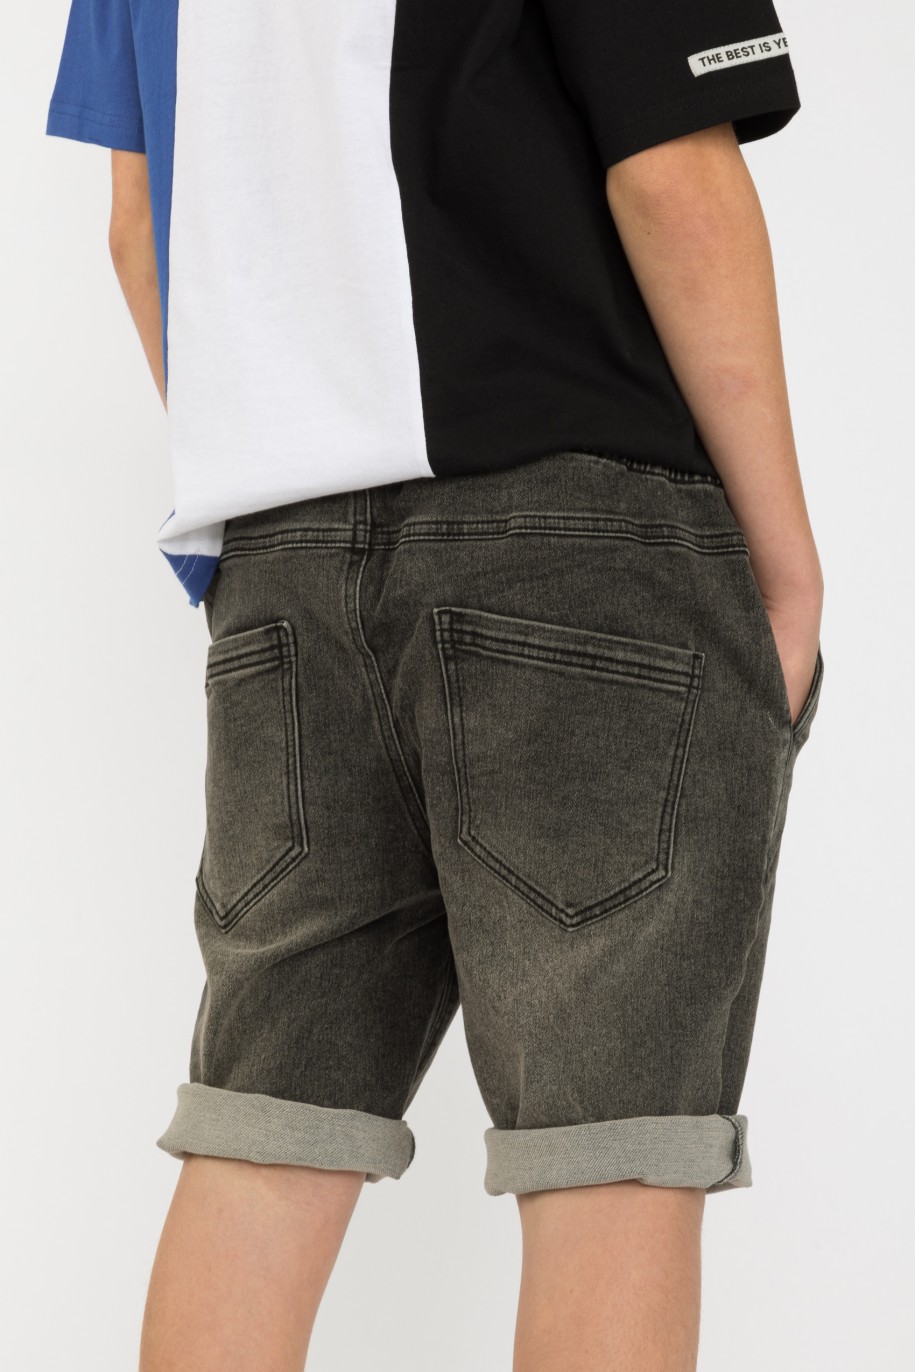 Krótkie szare jeansowe spodenki dla chłopaka - 41200